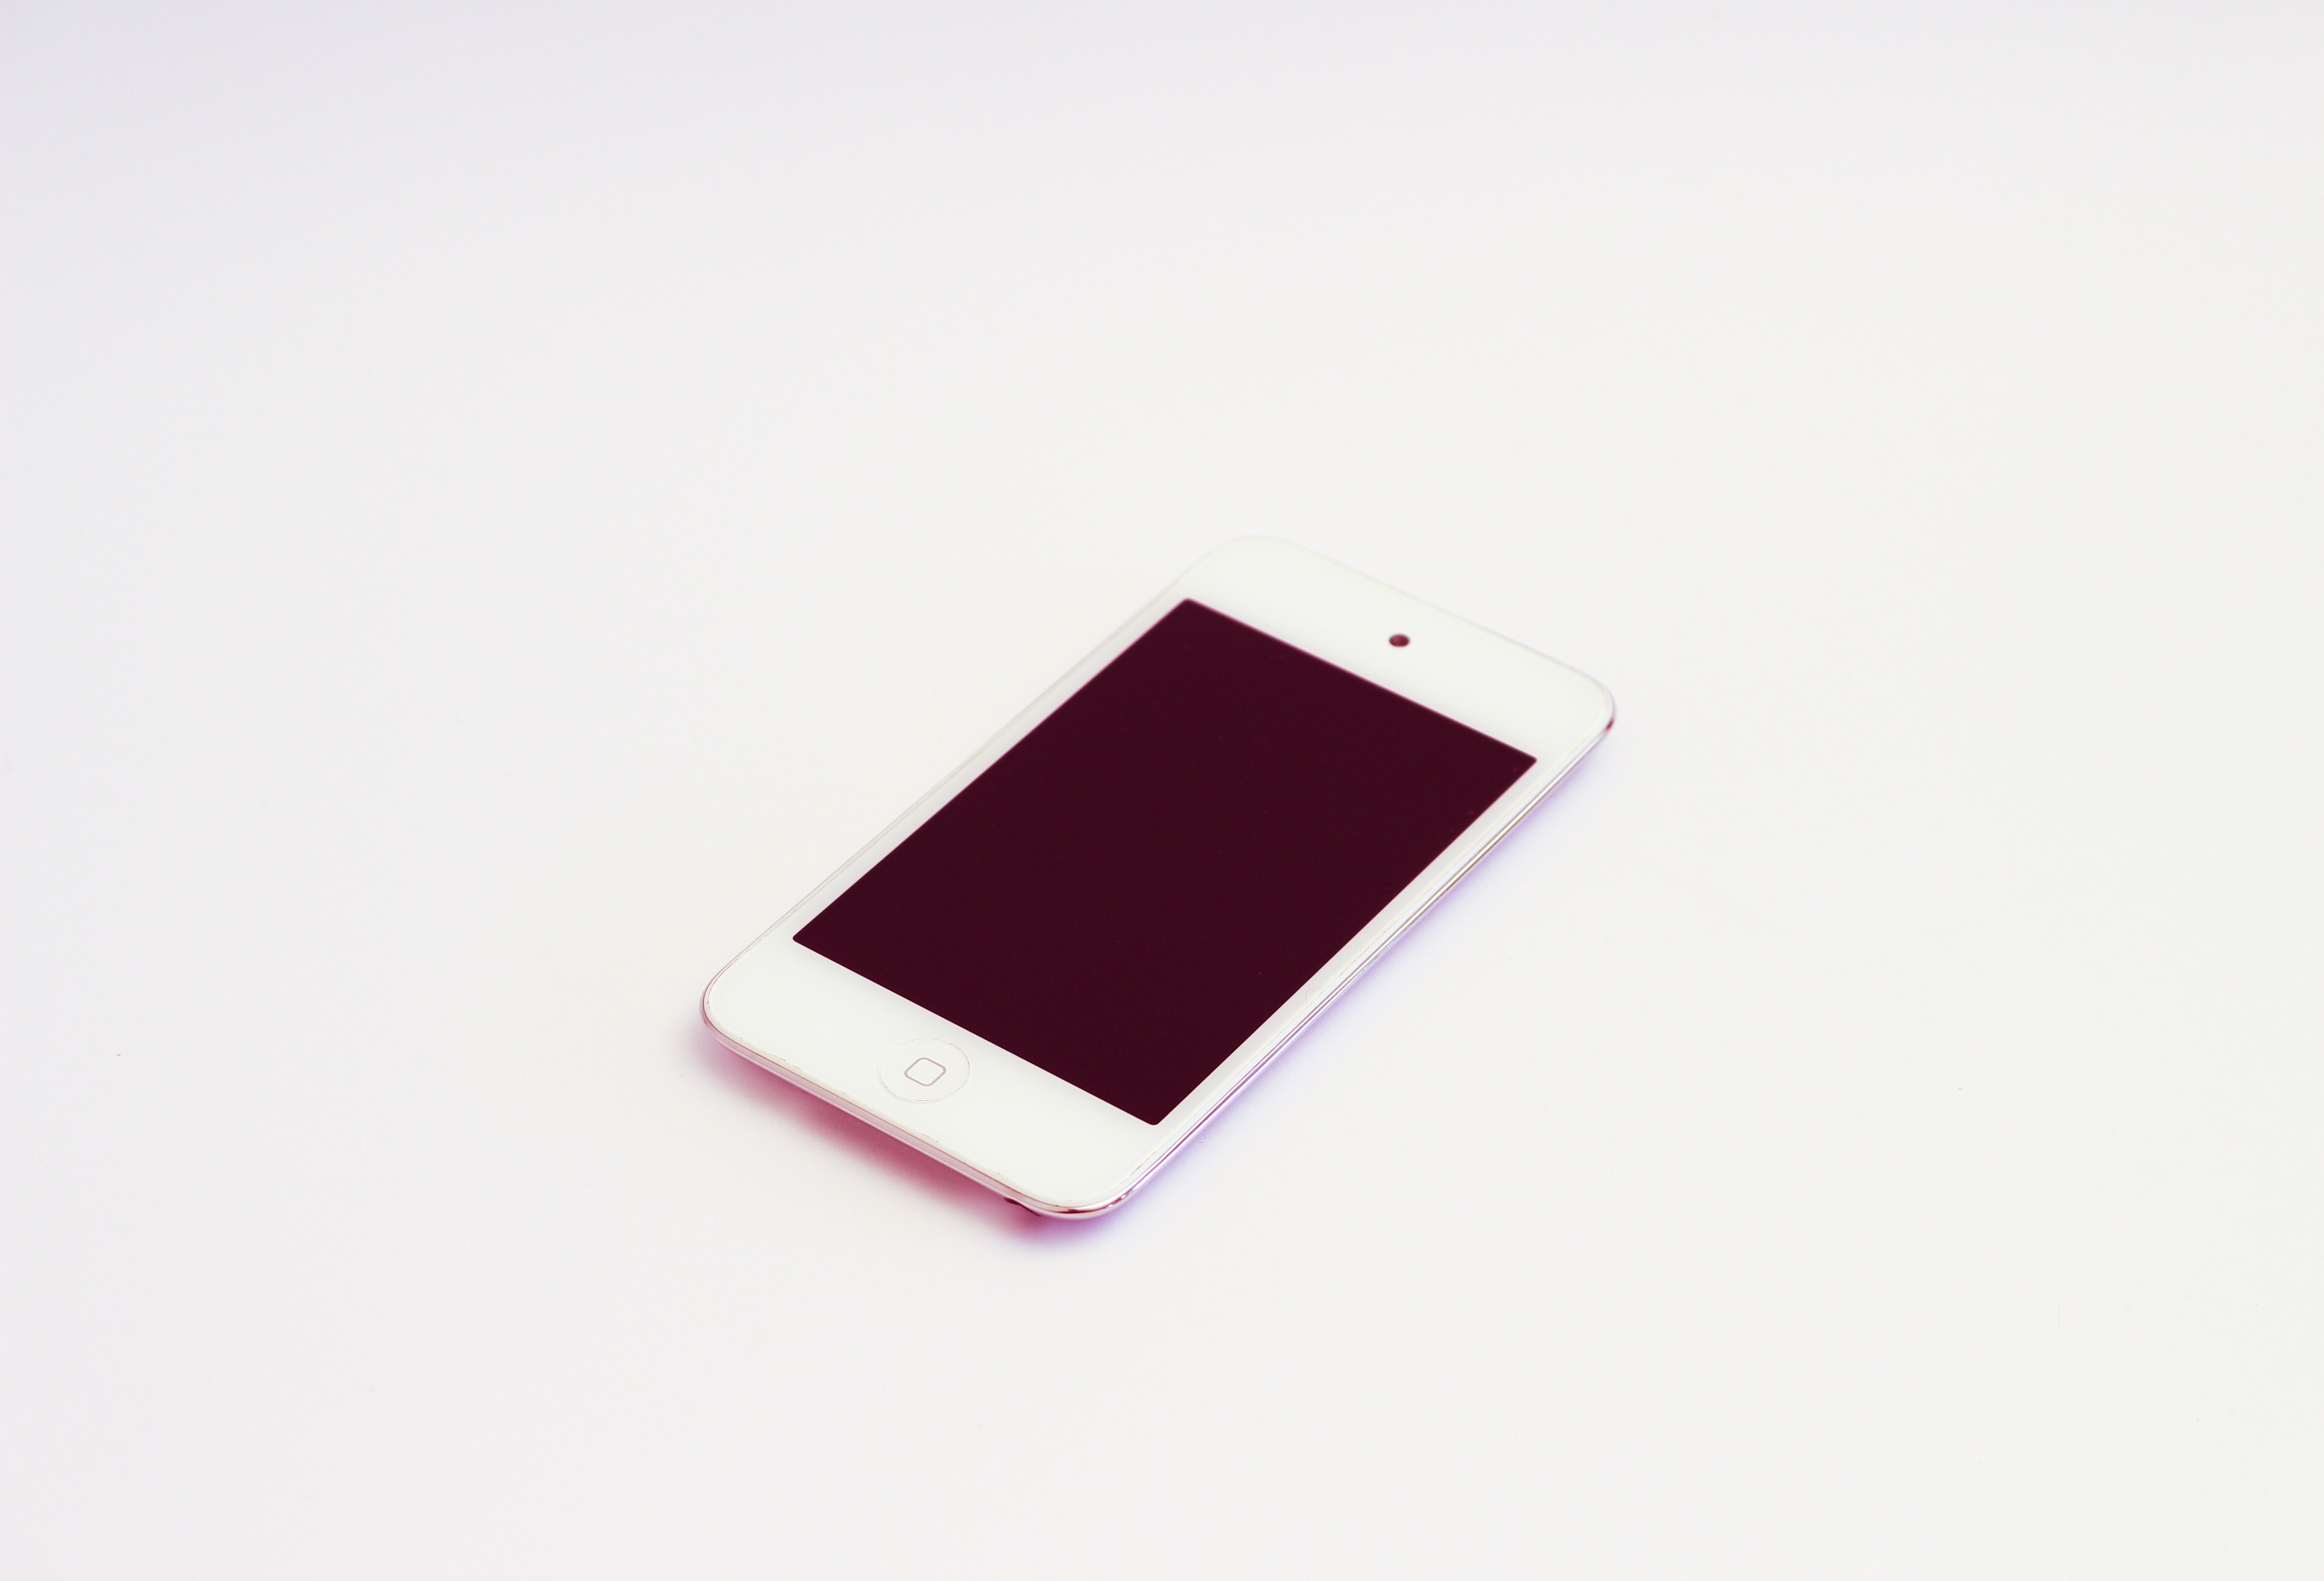 White ipod touch photo